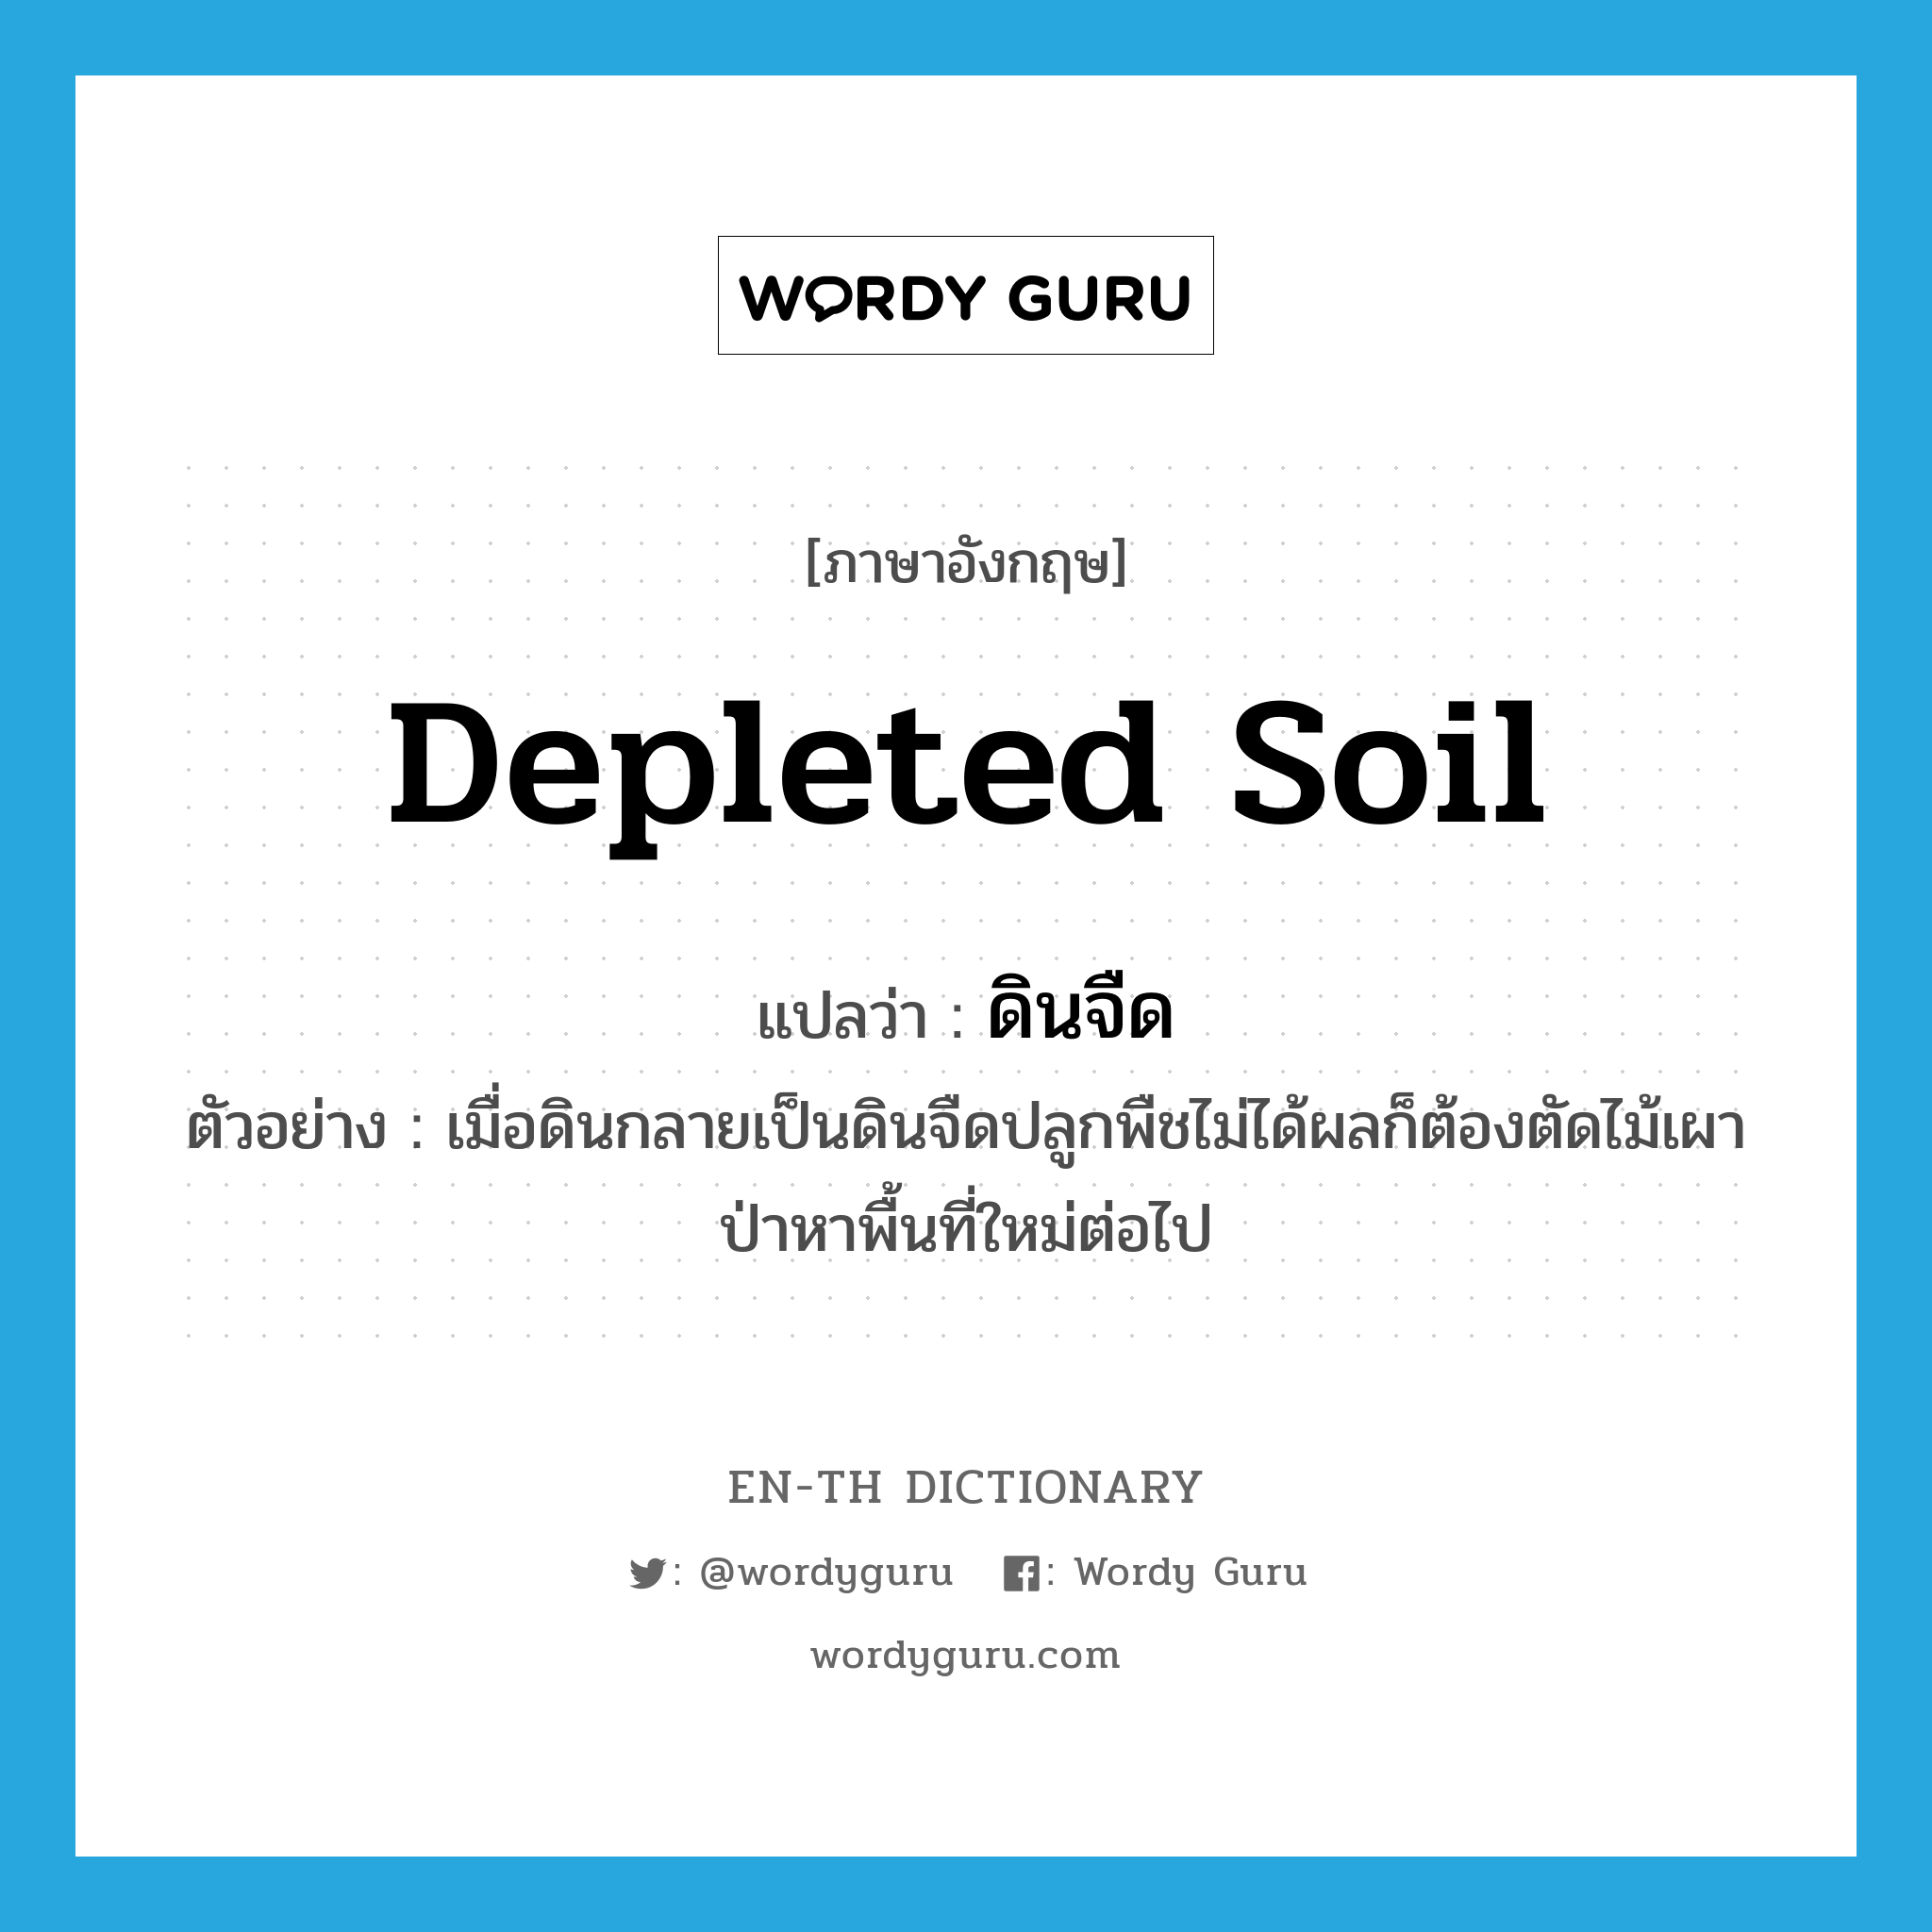 depleted soil แปลว่า?, คำศัพท์ภาษาอังกฤษ depleted soil แปลว่า ดินจืด ประเภท N ตัวอย่าง เมื่อดินกลายเป็นดินจืดปลูกพืชไม่ได้ผลก็ต้องตัดไม้เผาป่าหาพื้นที่ใหม่ต่อไป หมวด N